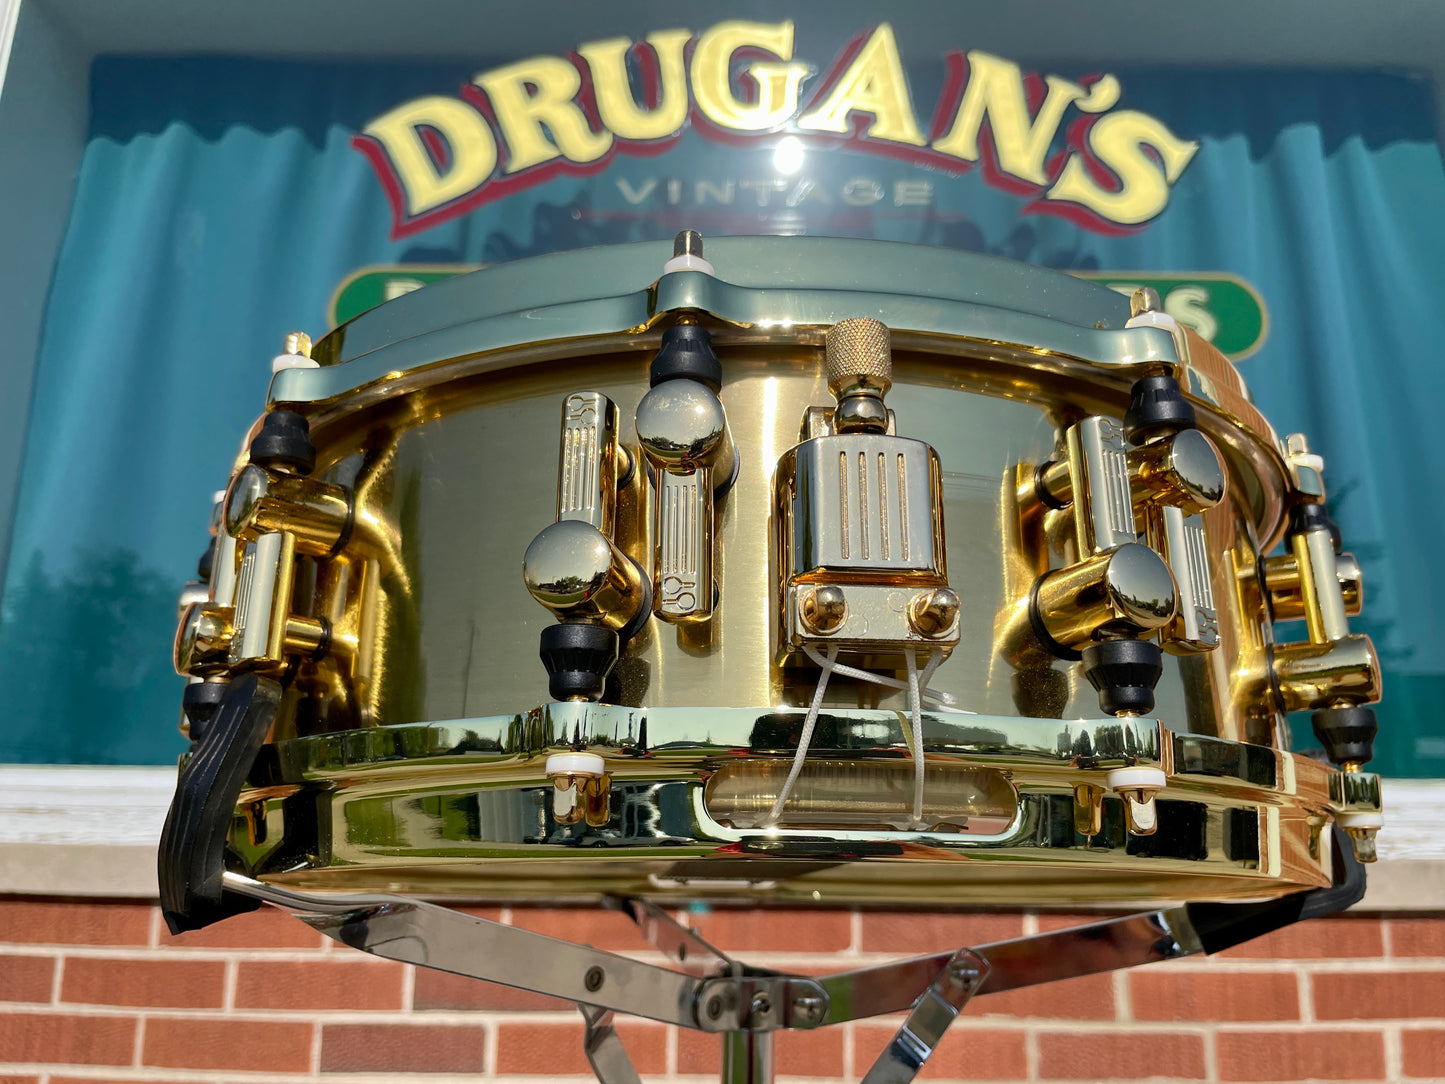 Sonor Artist Series 5x14 Brass Snare Drum Gold